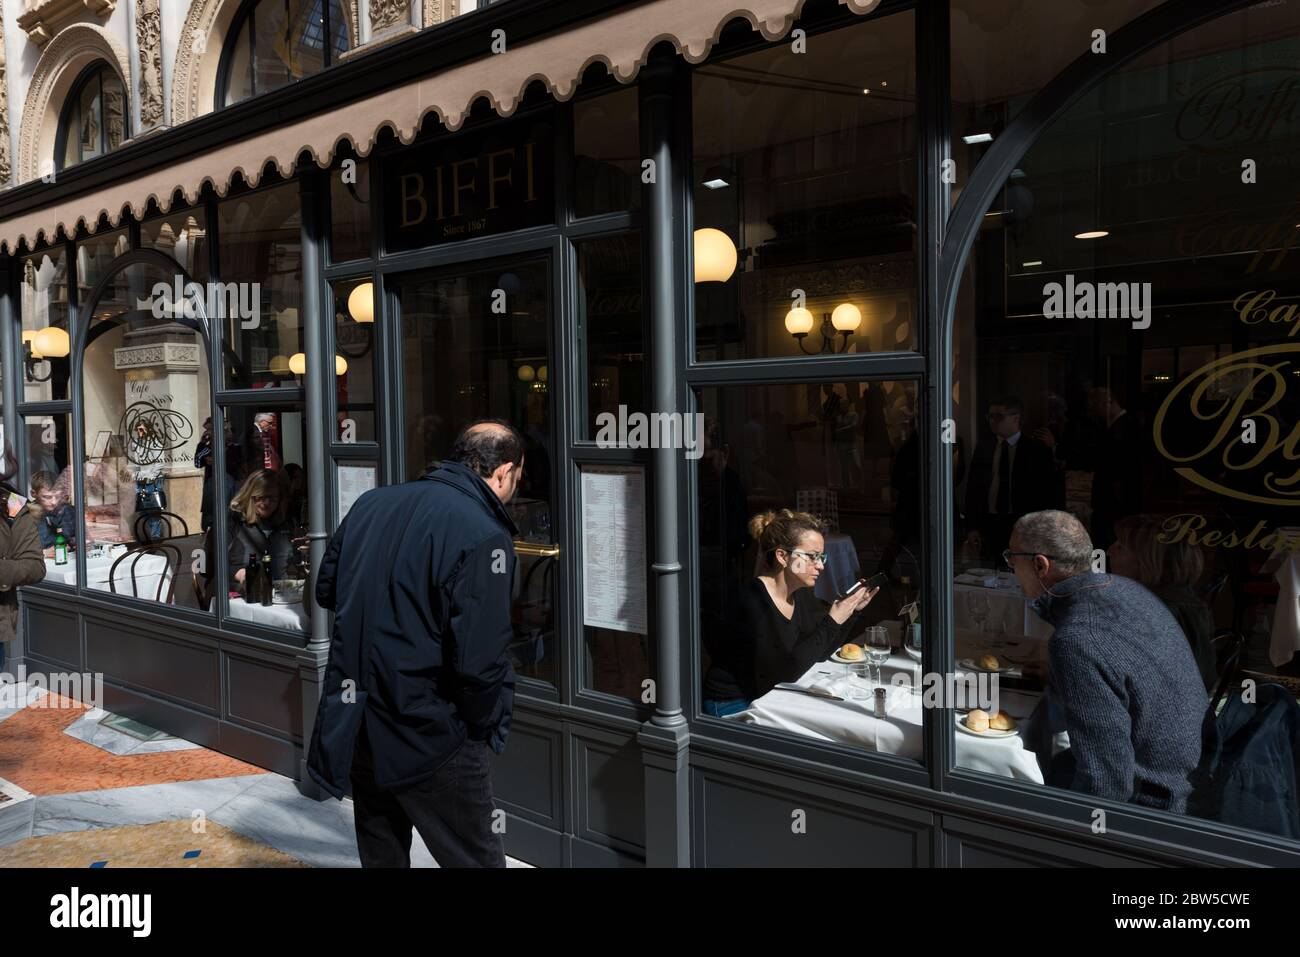 MILANO, ITALIA - 16 MARZO 2018: Immagine orizzontale del ristorante all'interno della Galleria Vittorio Emanuele II, un antico centro commerciale di Milano Foto Stock